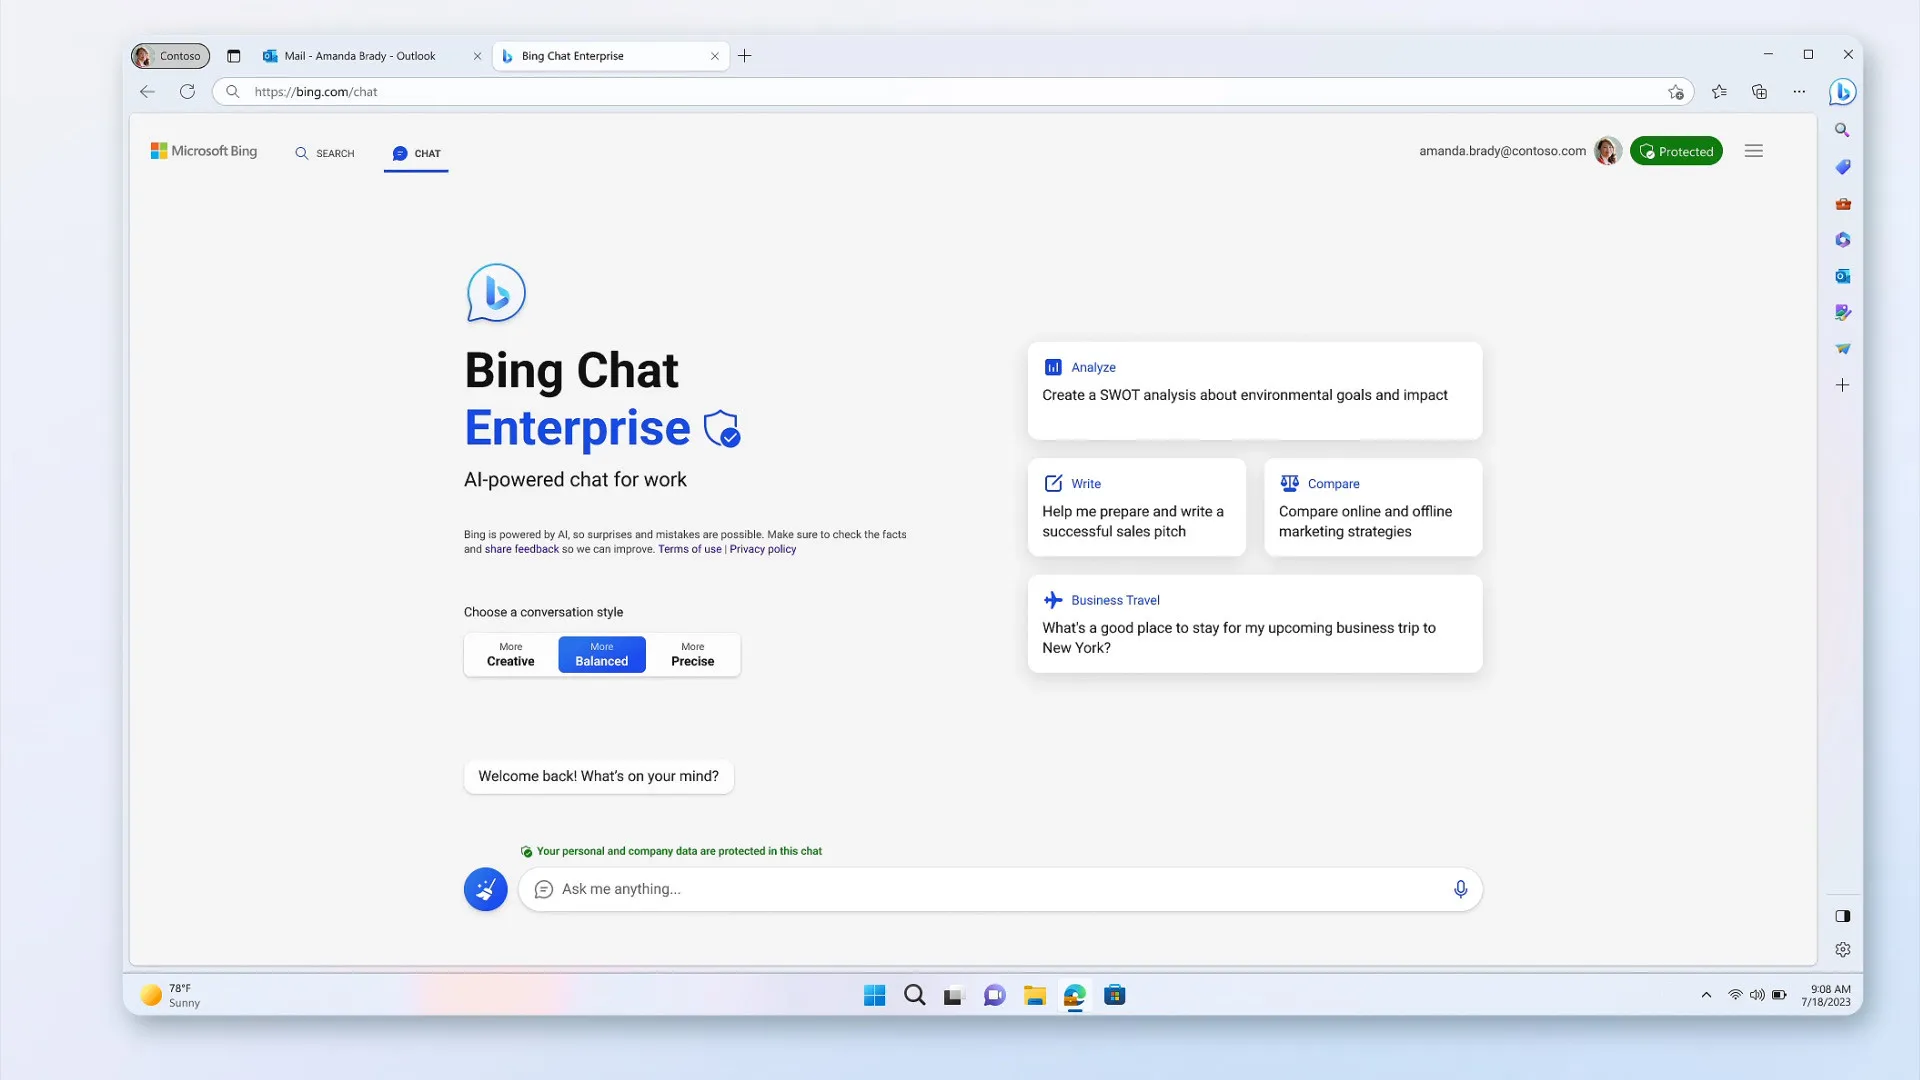 Microsoft Bing Chat Enterprise